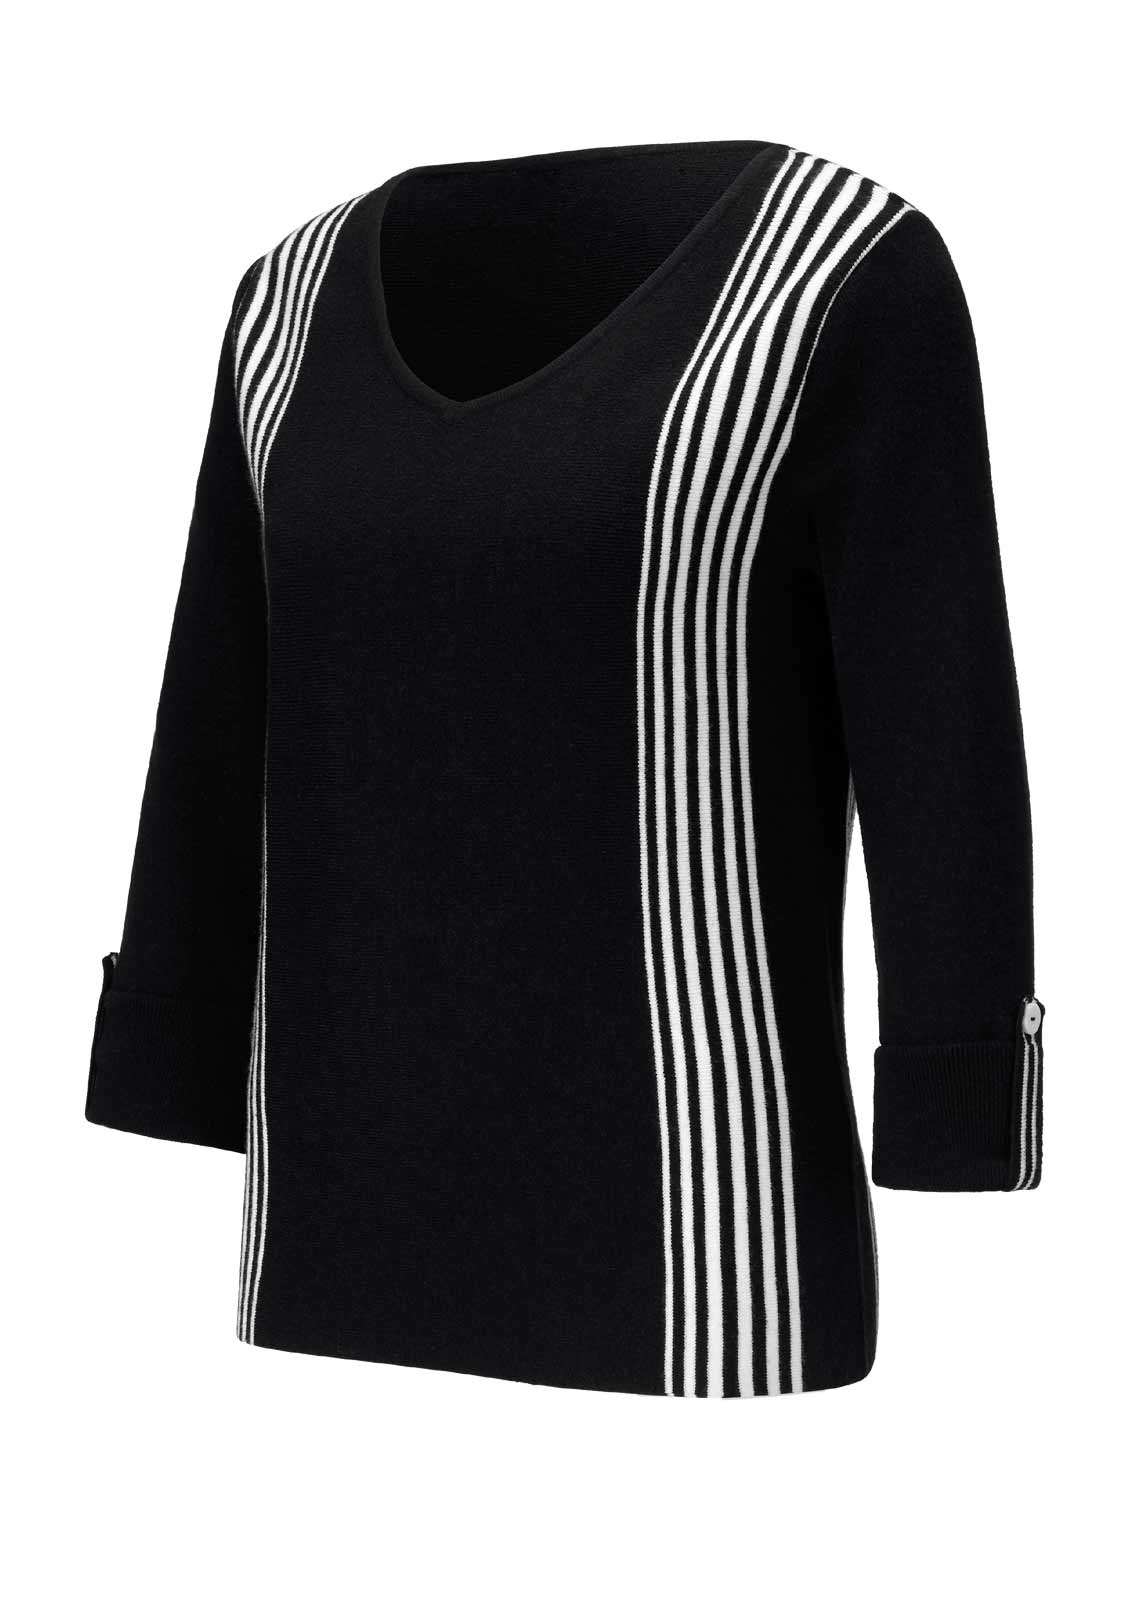 CRéATION L Damen Kuschel-Pullover, schwarz-weiß